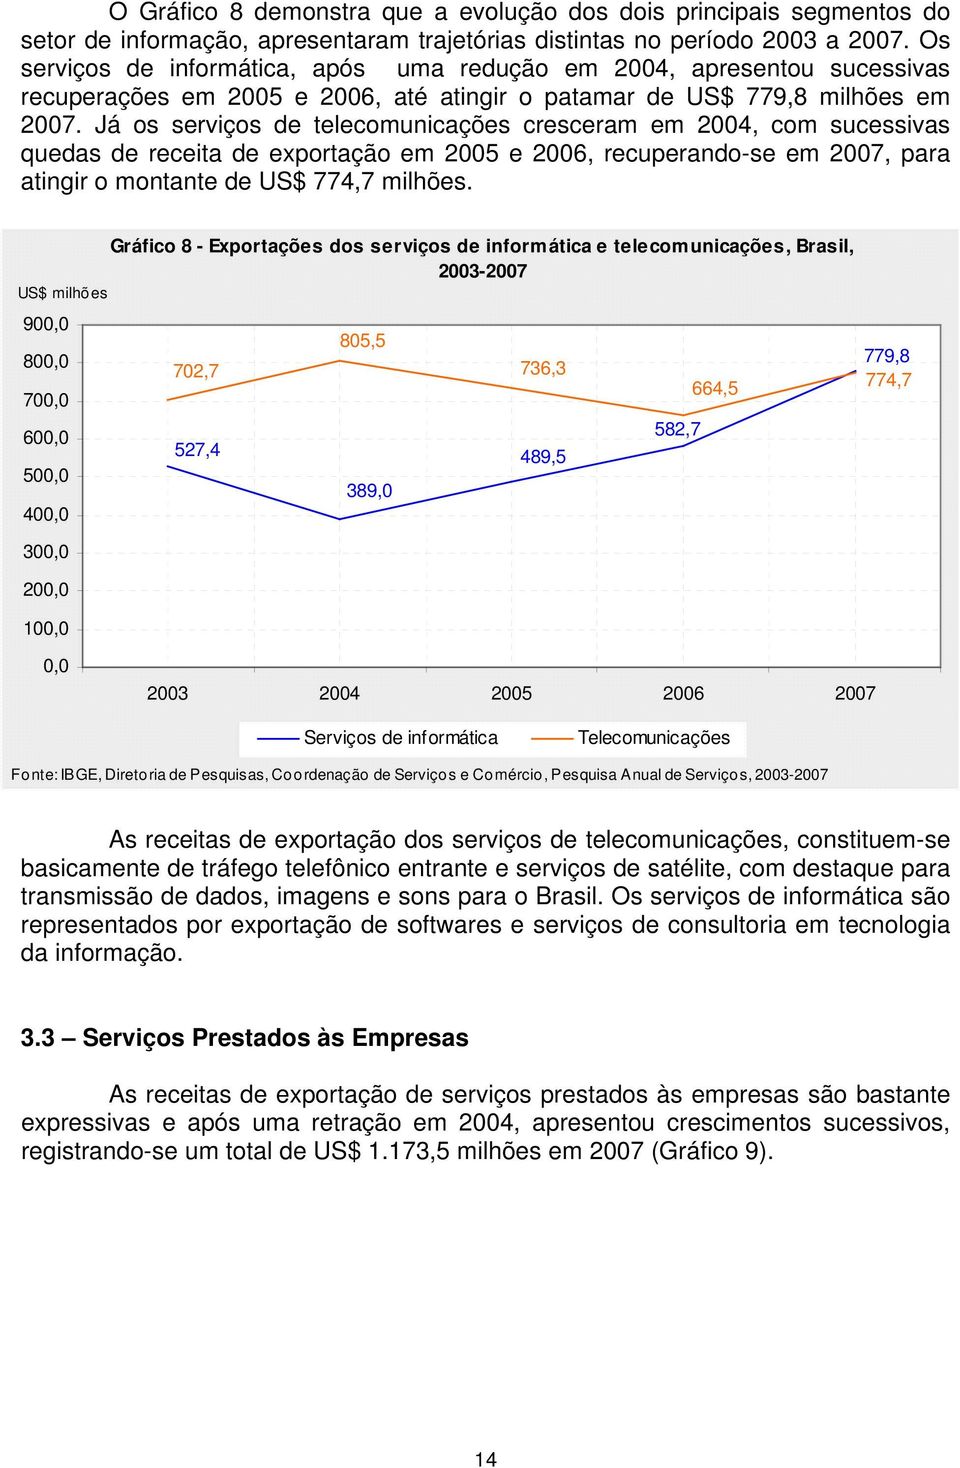 Já os serviços de telecomunicações cresceram em 2004, com sucessivas quedas de receita de exportação em 2005 e 2006, recuperando-se em 2007, para atingir o montante de US$ 774,7 milhões.